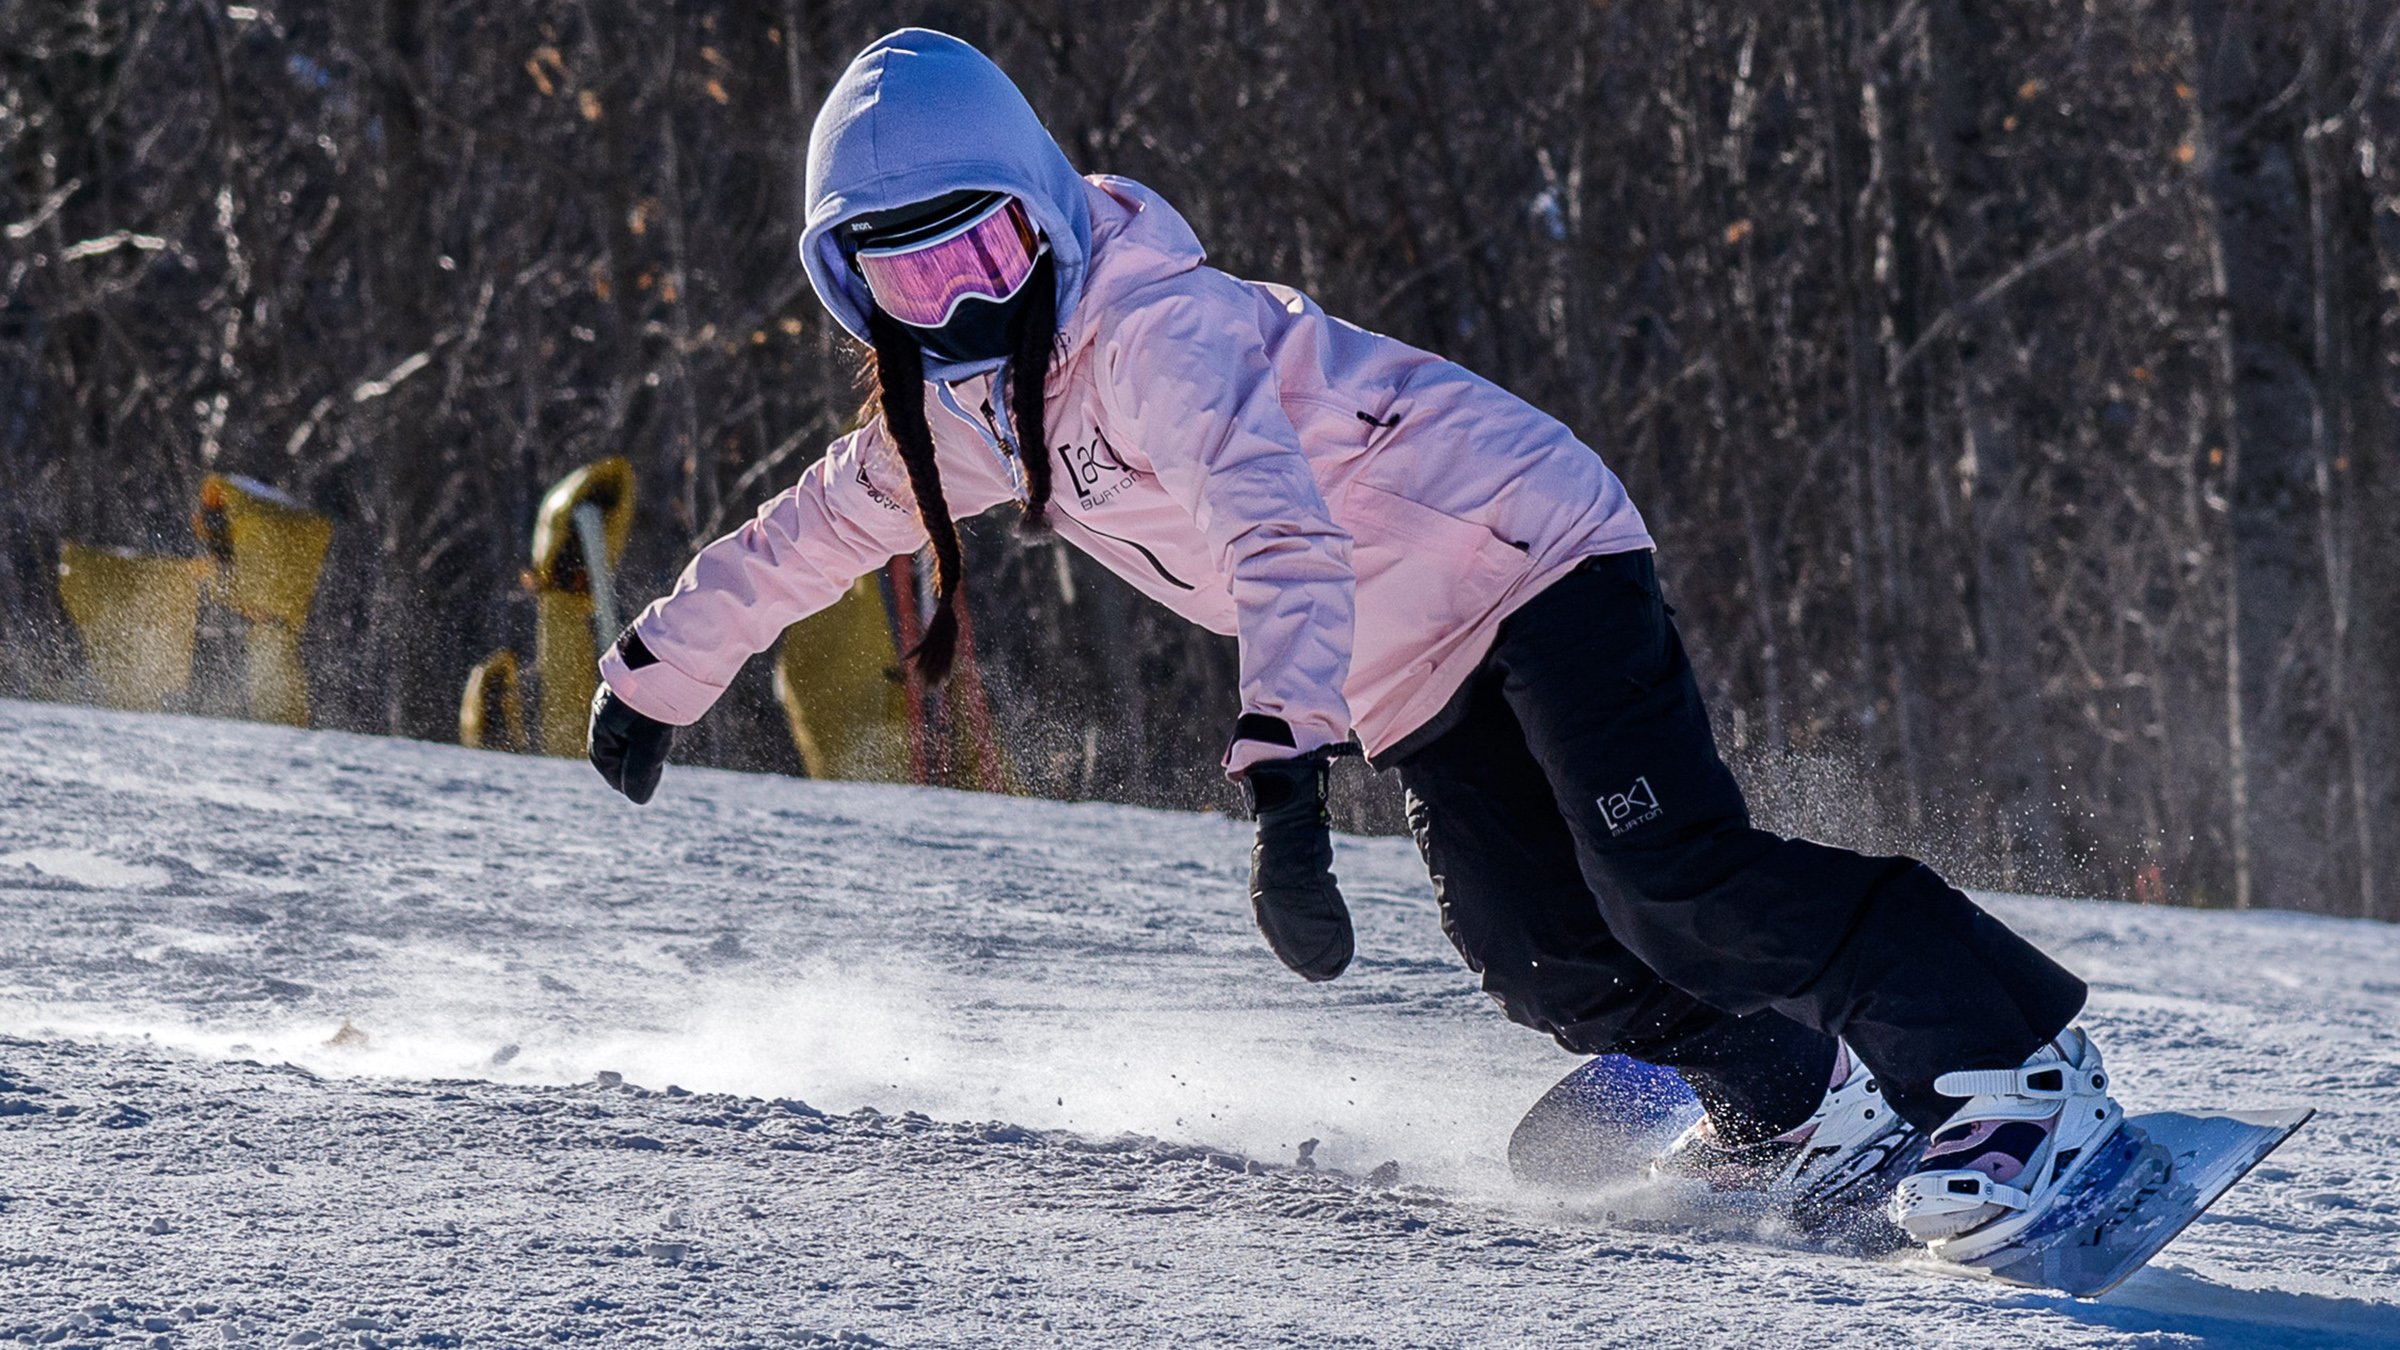 Next Snowboard Lesson | Stratton Mountain